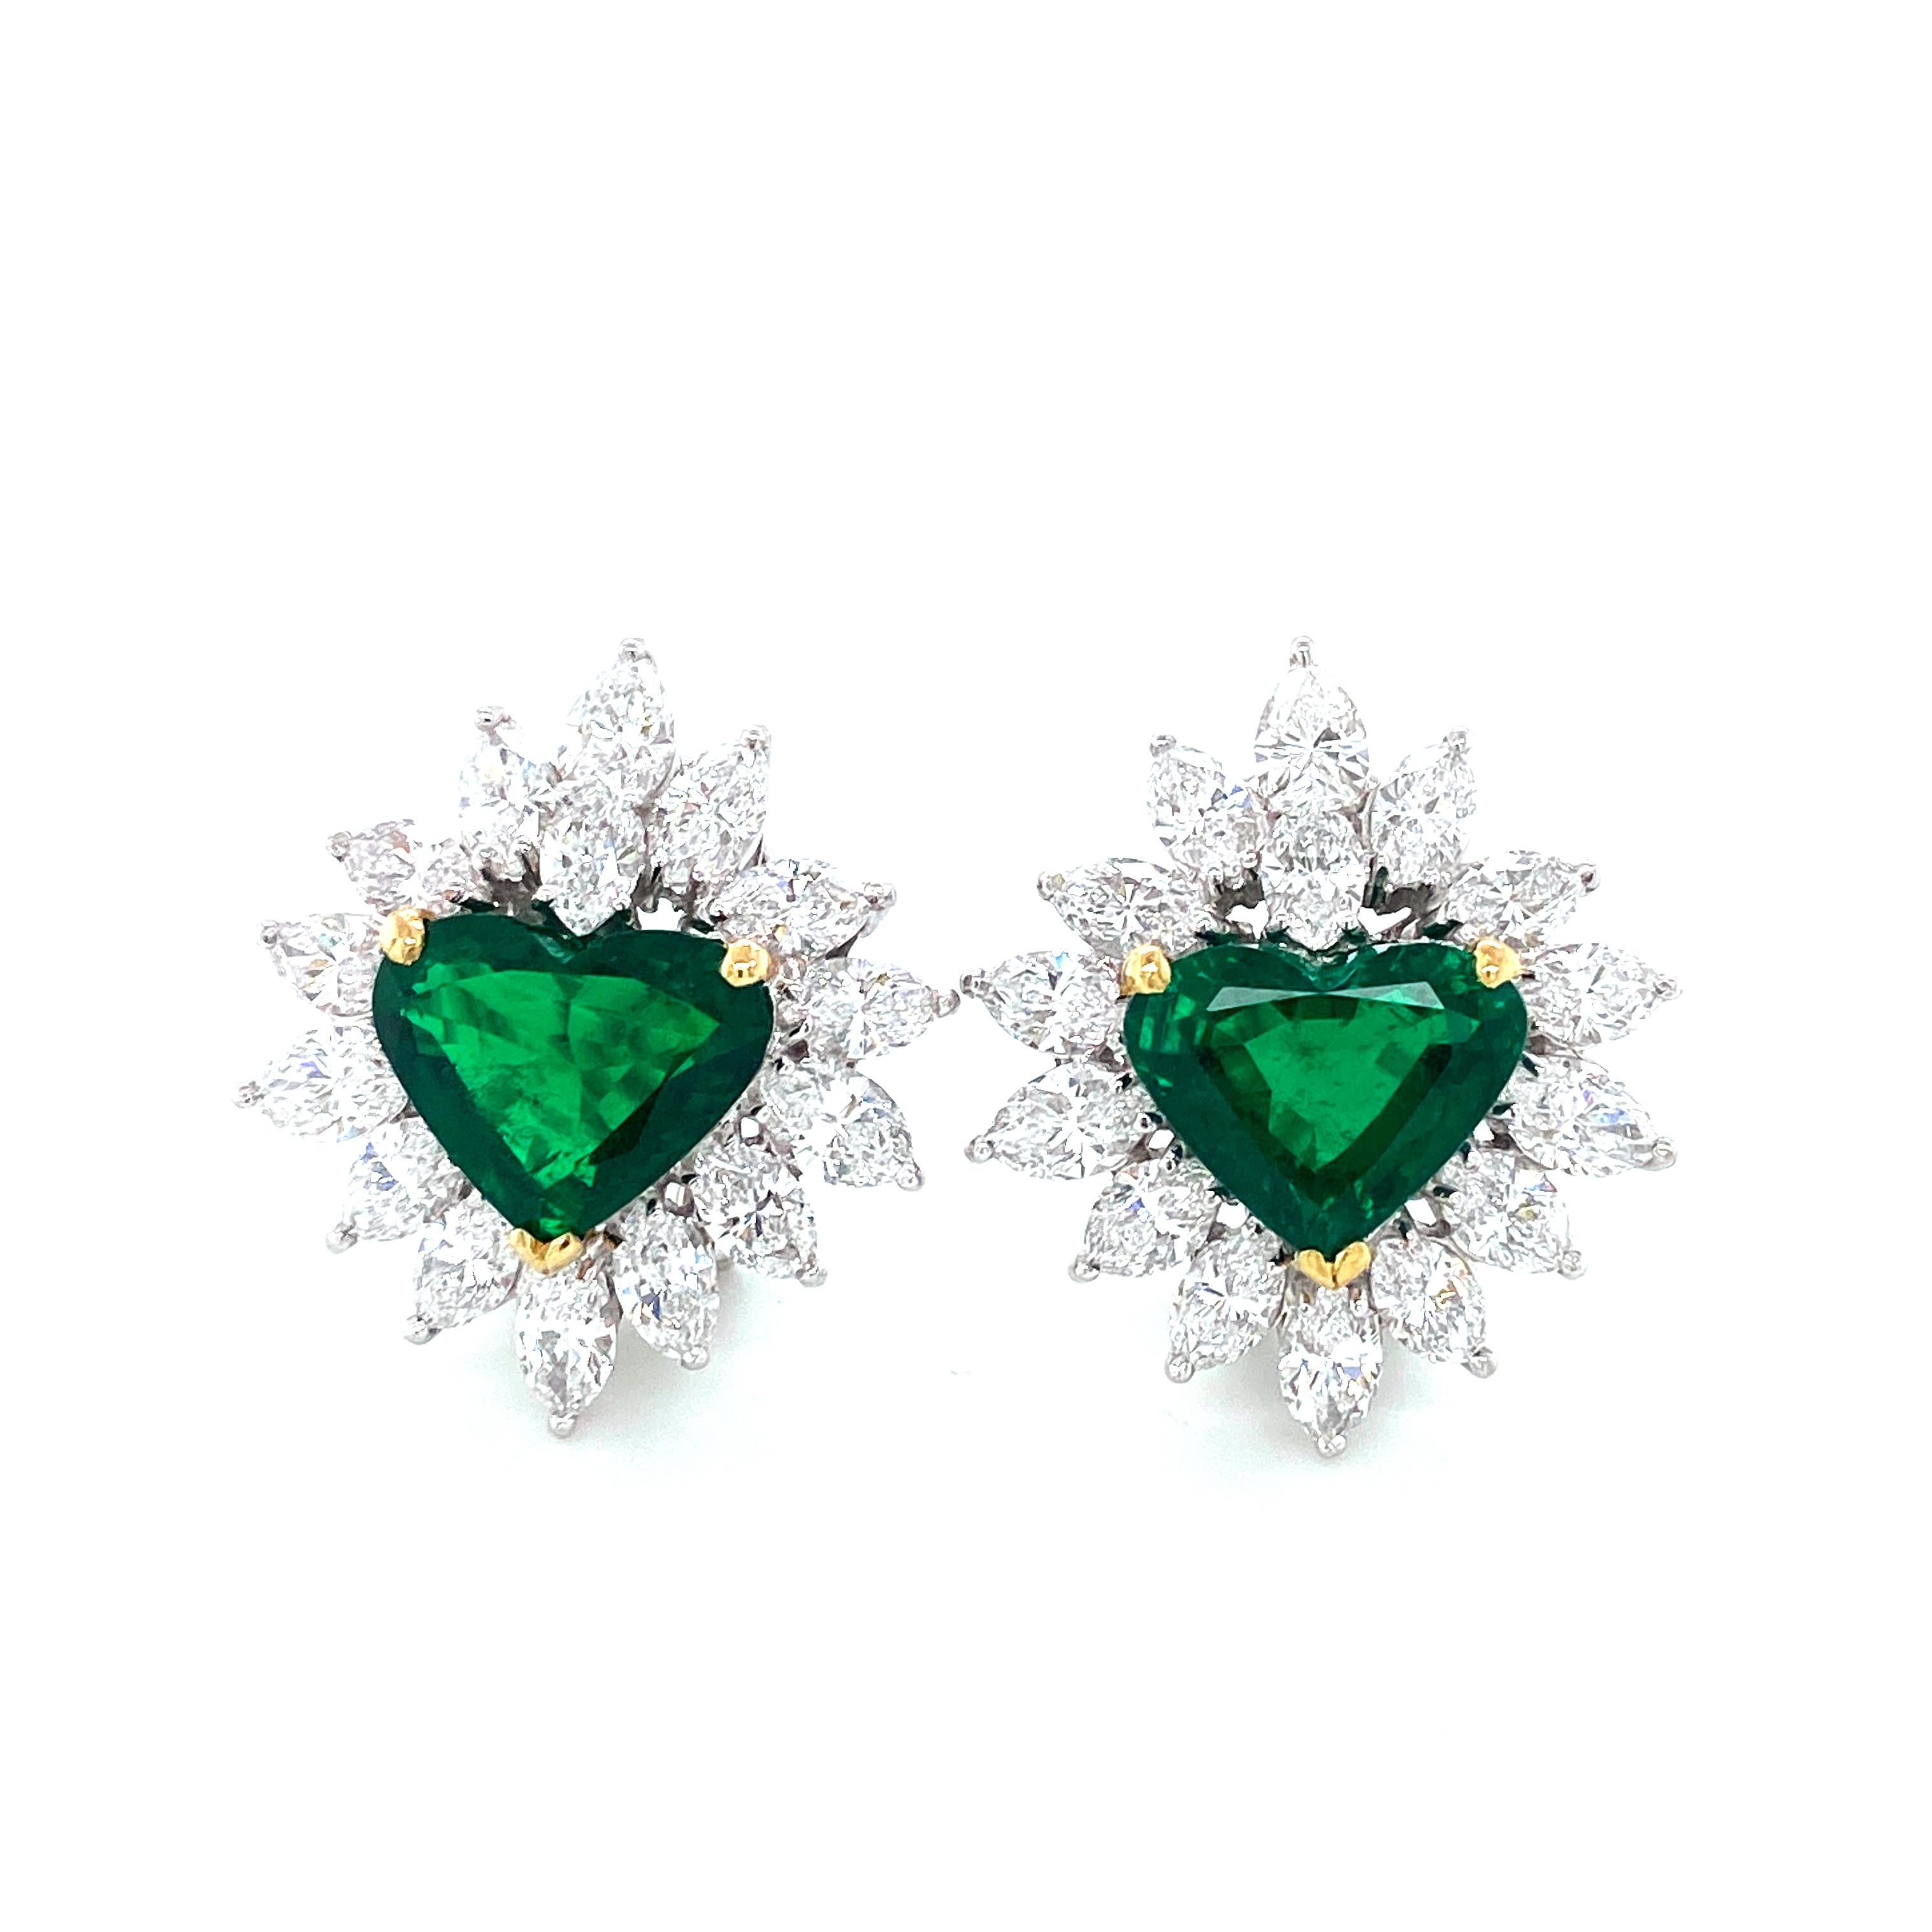 8.34 Karat Gubelin zertifizierte herzförmige Smaragd- und weiße Diamantohrringe:

Ein sehr bedeutender Ohrring mit einem Paar atemberaubender herzförmiger Smaragde von 8,34 Karat mit Gubelin-Laborzertifikat, umgeben von einem Kranz feinster weißer